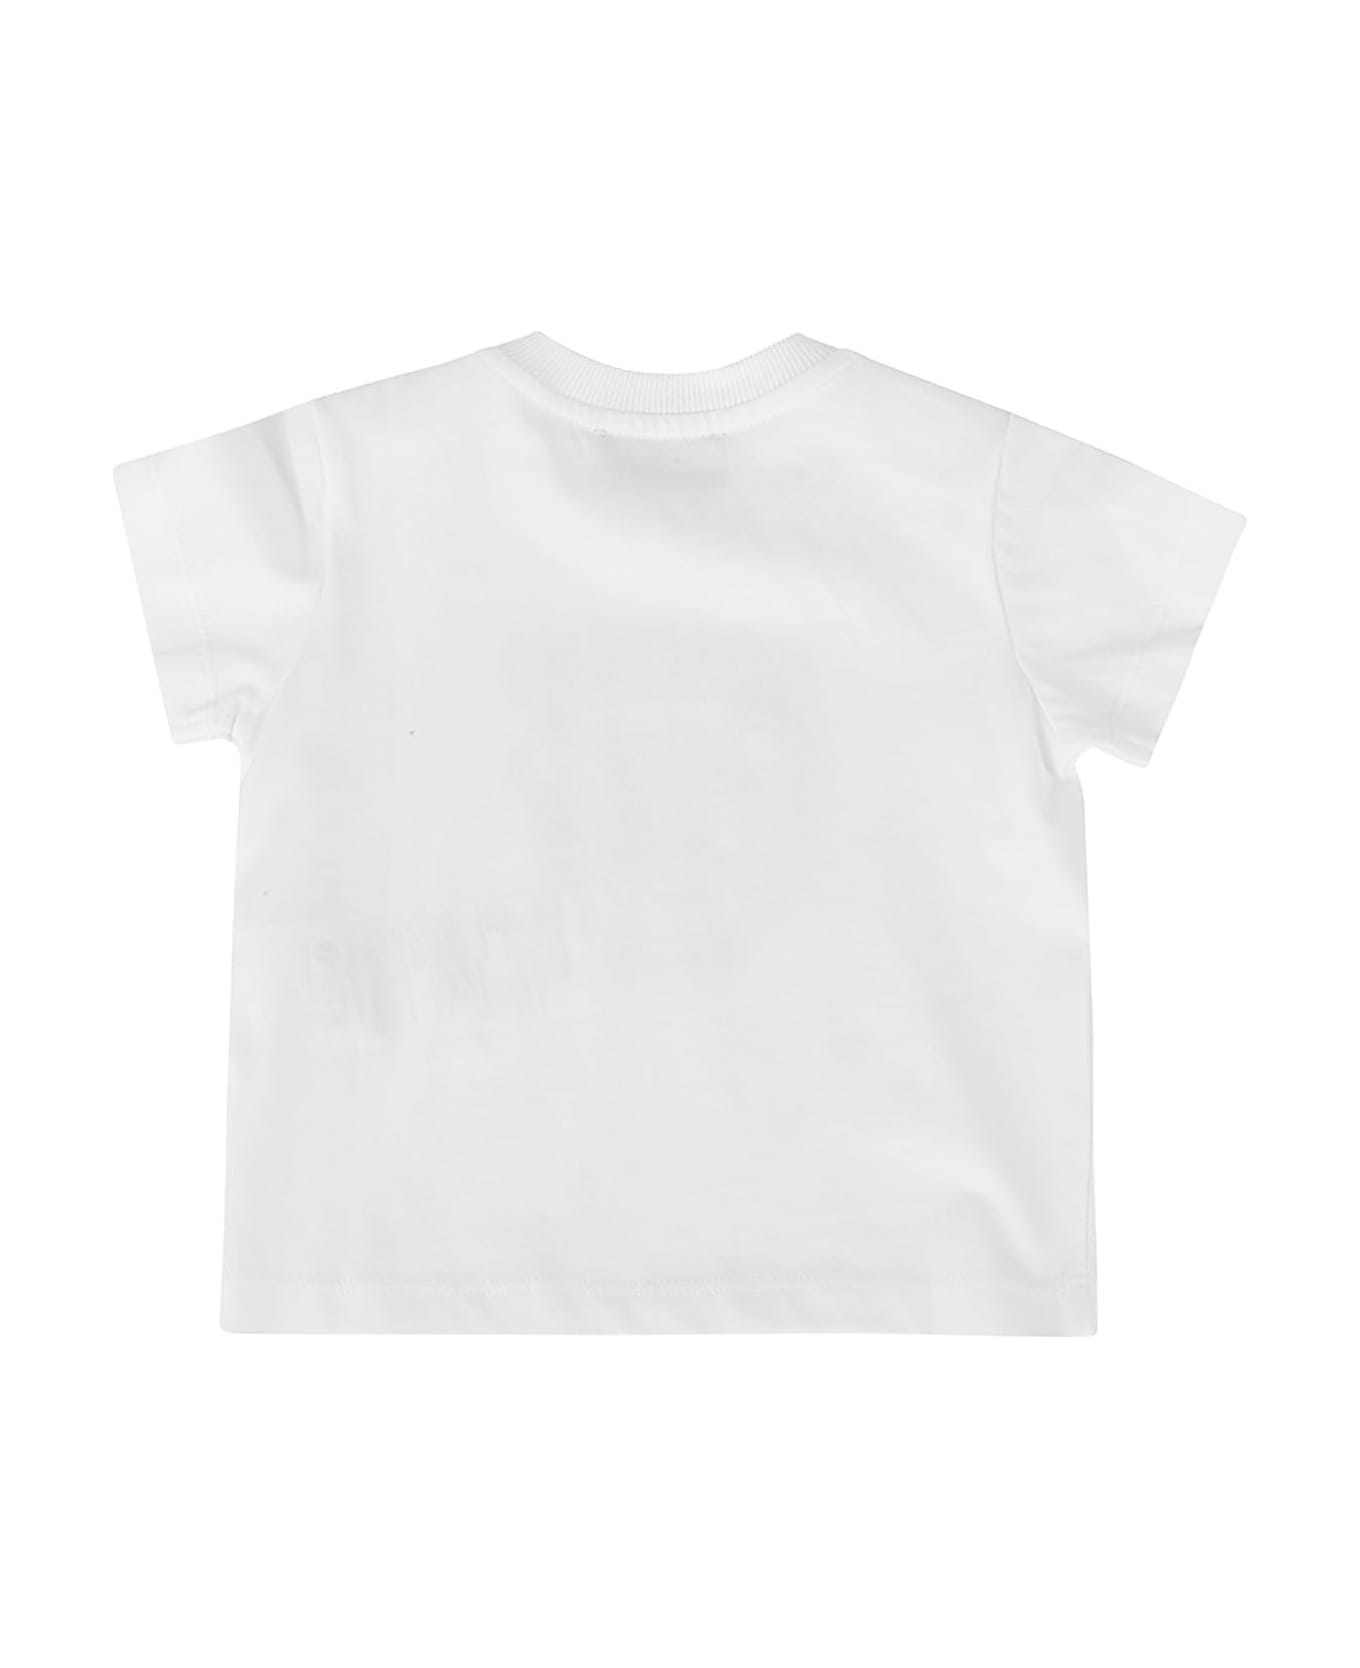 Moschino Tshirt - White Tシャツ＆ポロシャツ